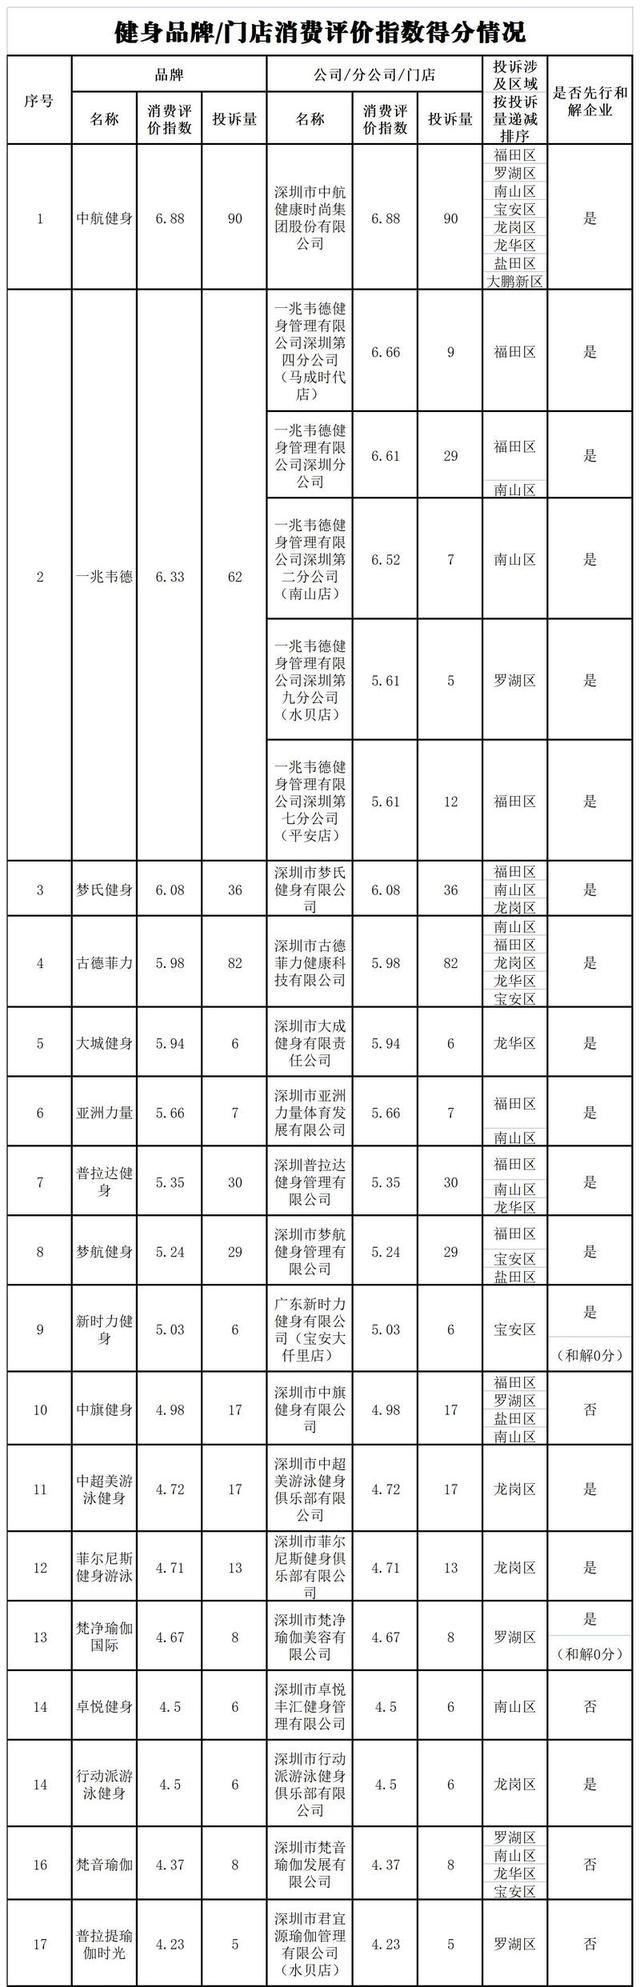 深圳市消费者委员会发布健身行业消费评价指数排行榜